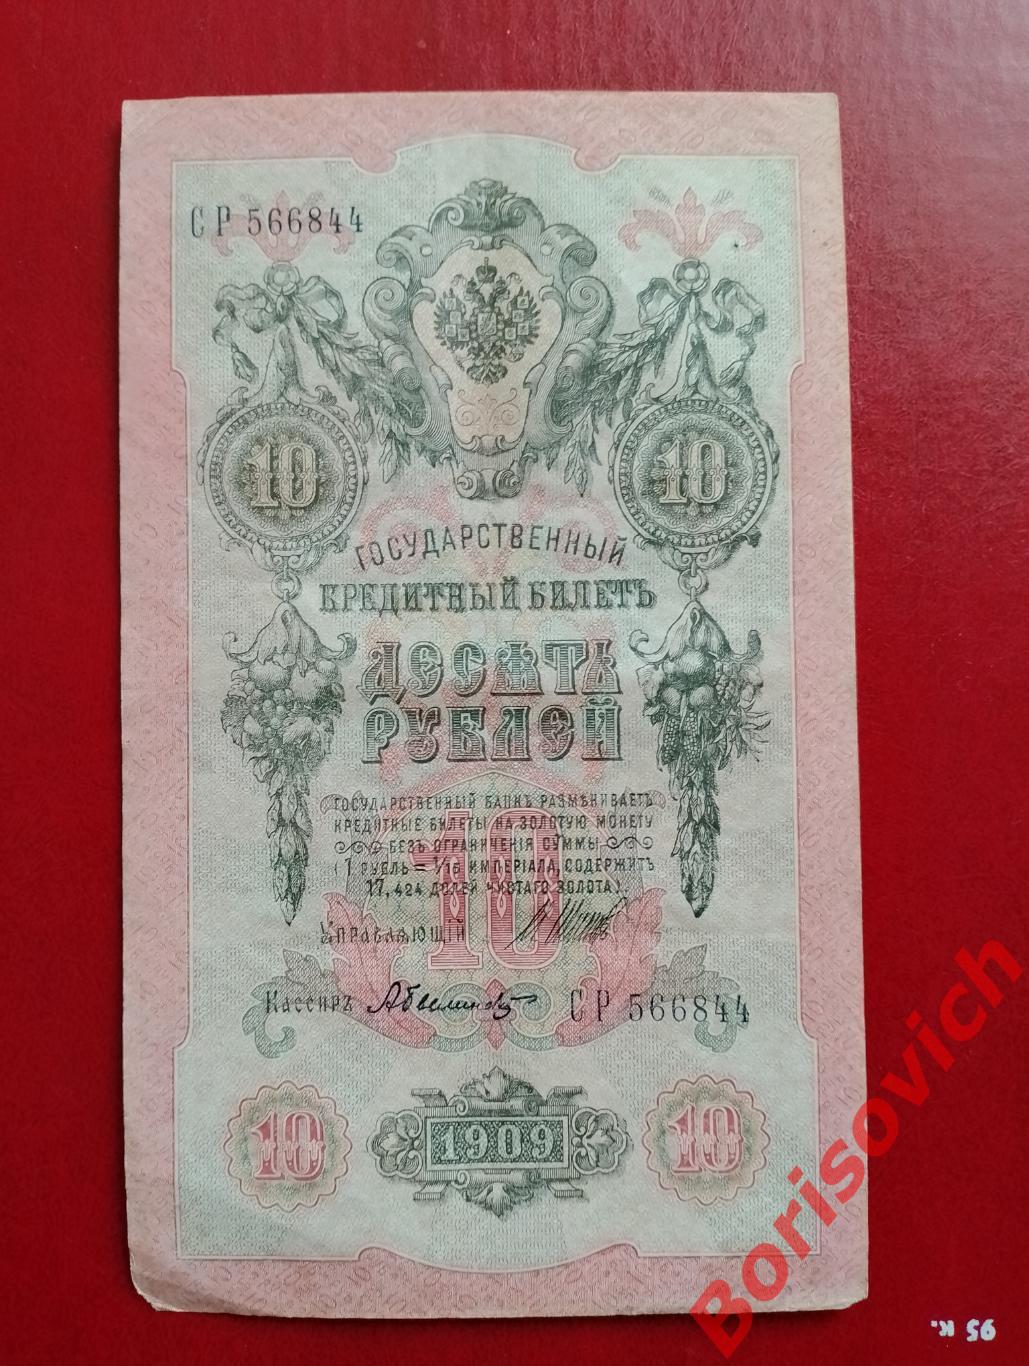 10 рублей 1909 г Управляющий ШИПОВ Кассир БЫЛИНСКИЙ. СР 566844